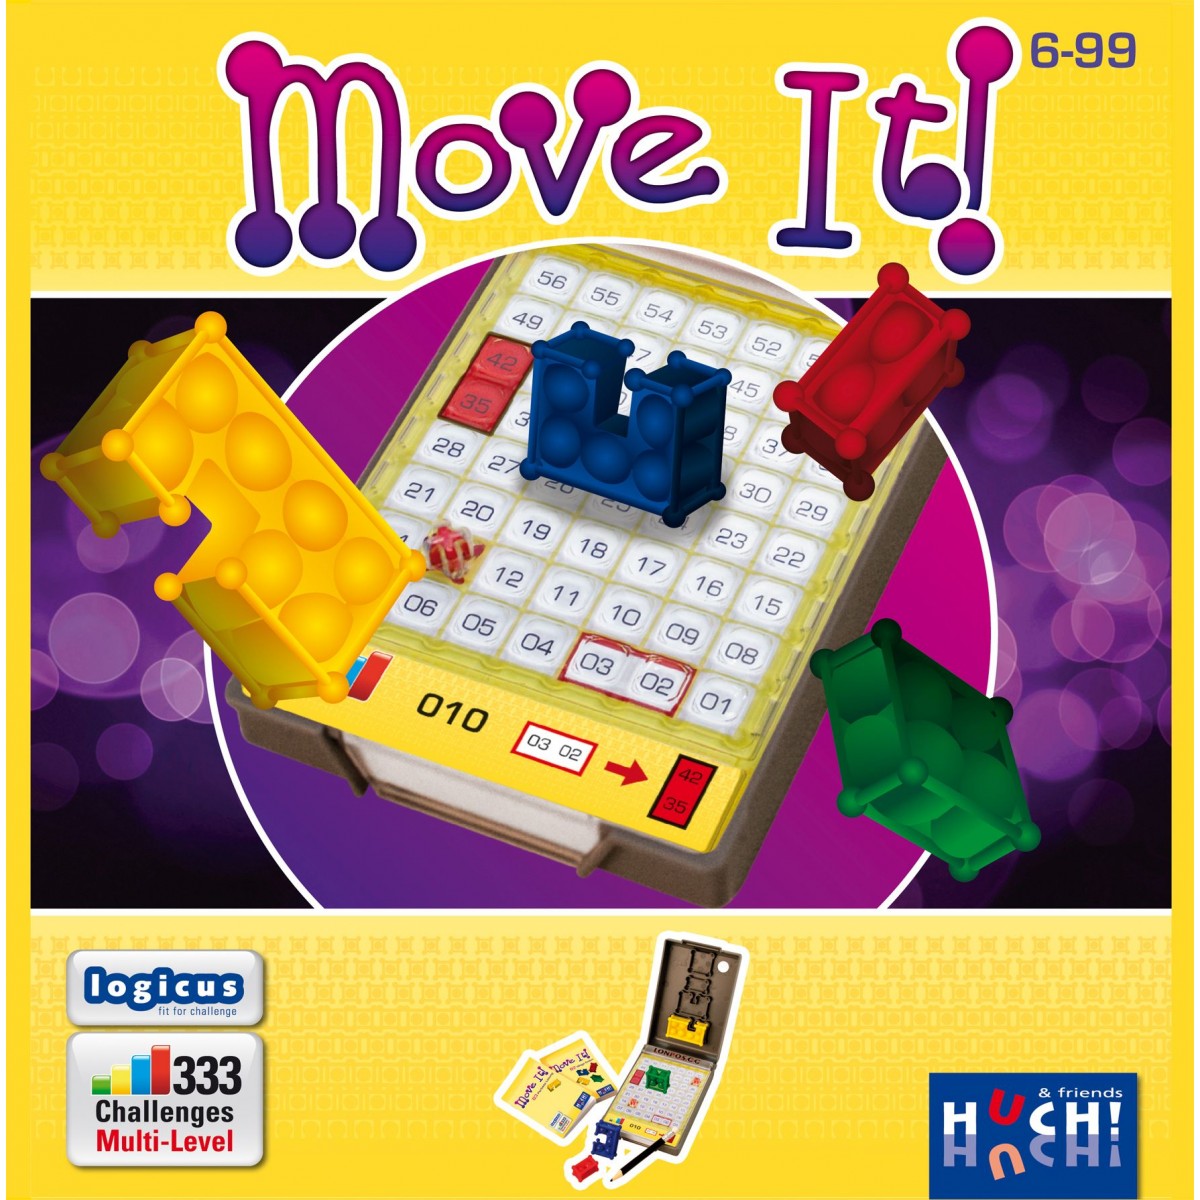 Huch - Move it